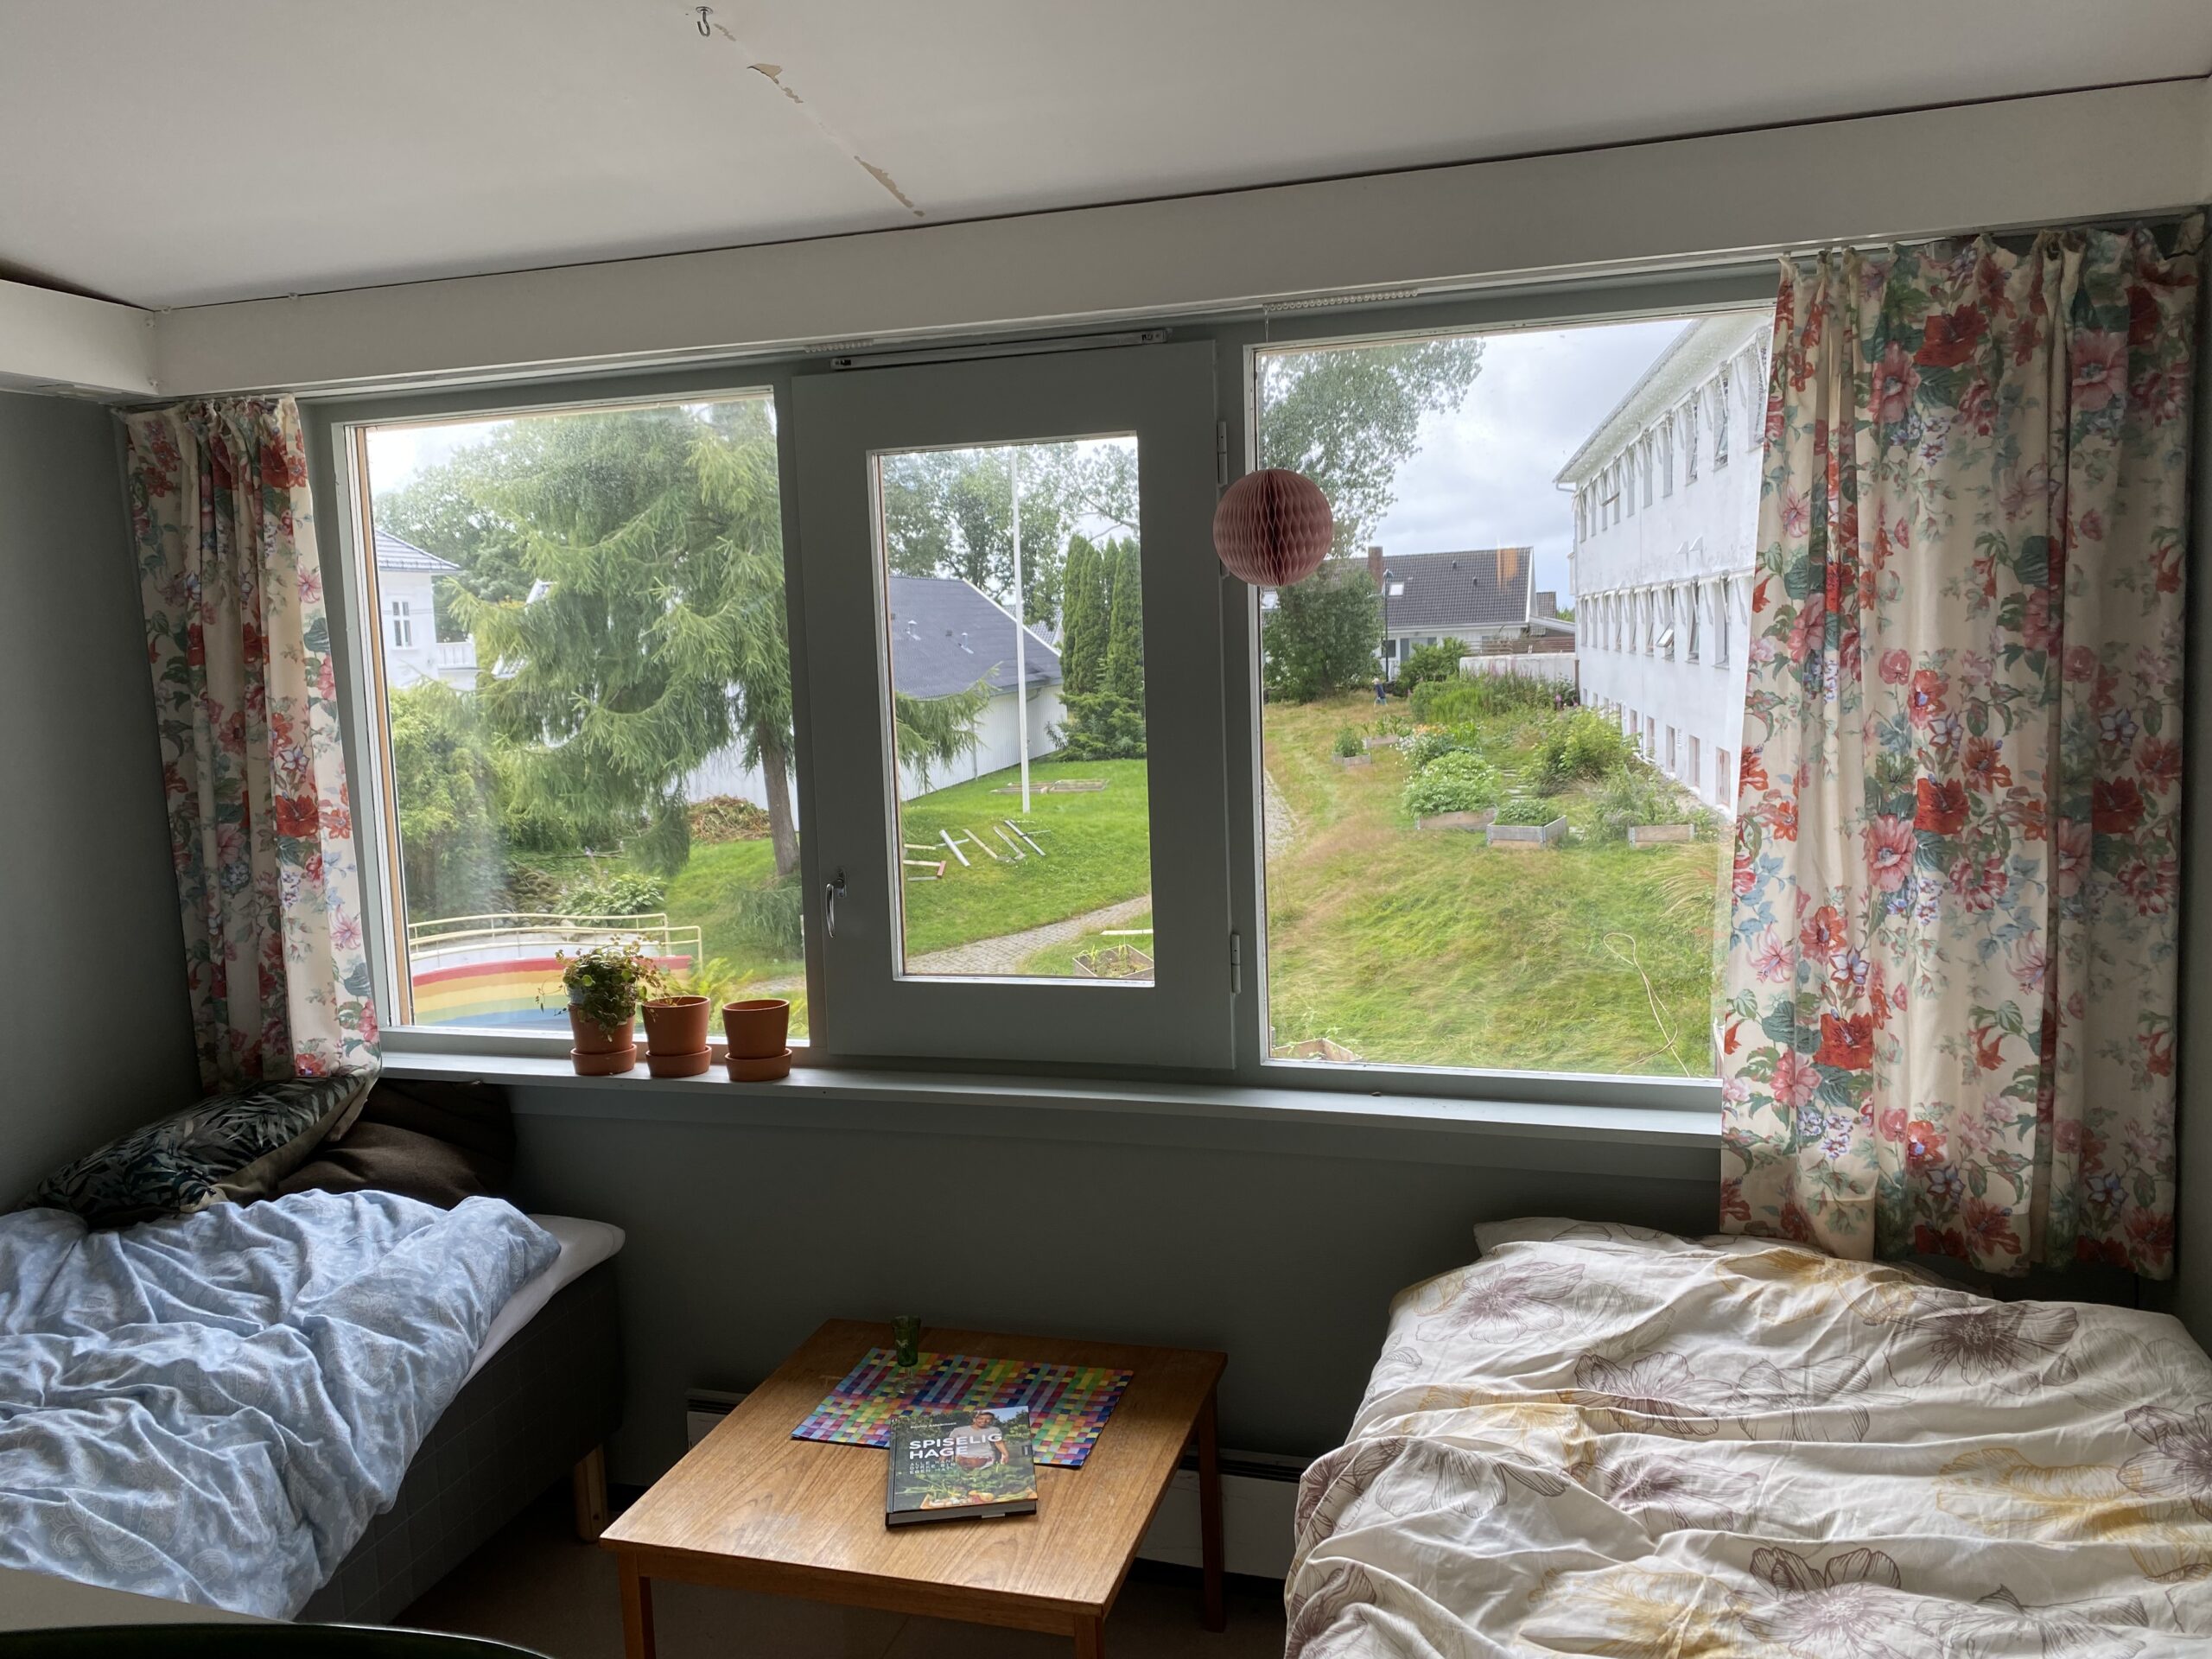 Bilde av rom med to senger og et vindu imellom sengene. Gjennom vinduet ser man en hage med en bro med en regnbue malt på siden